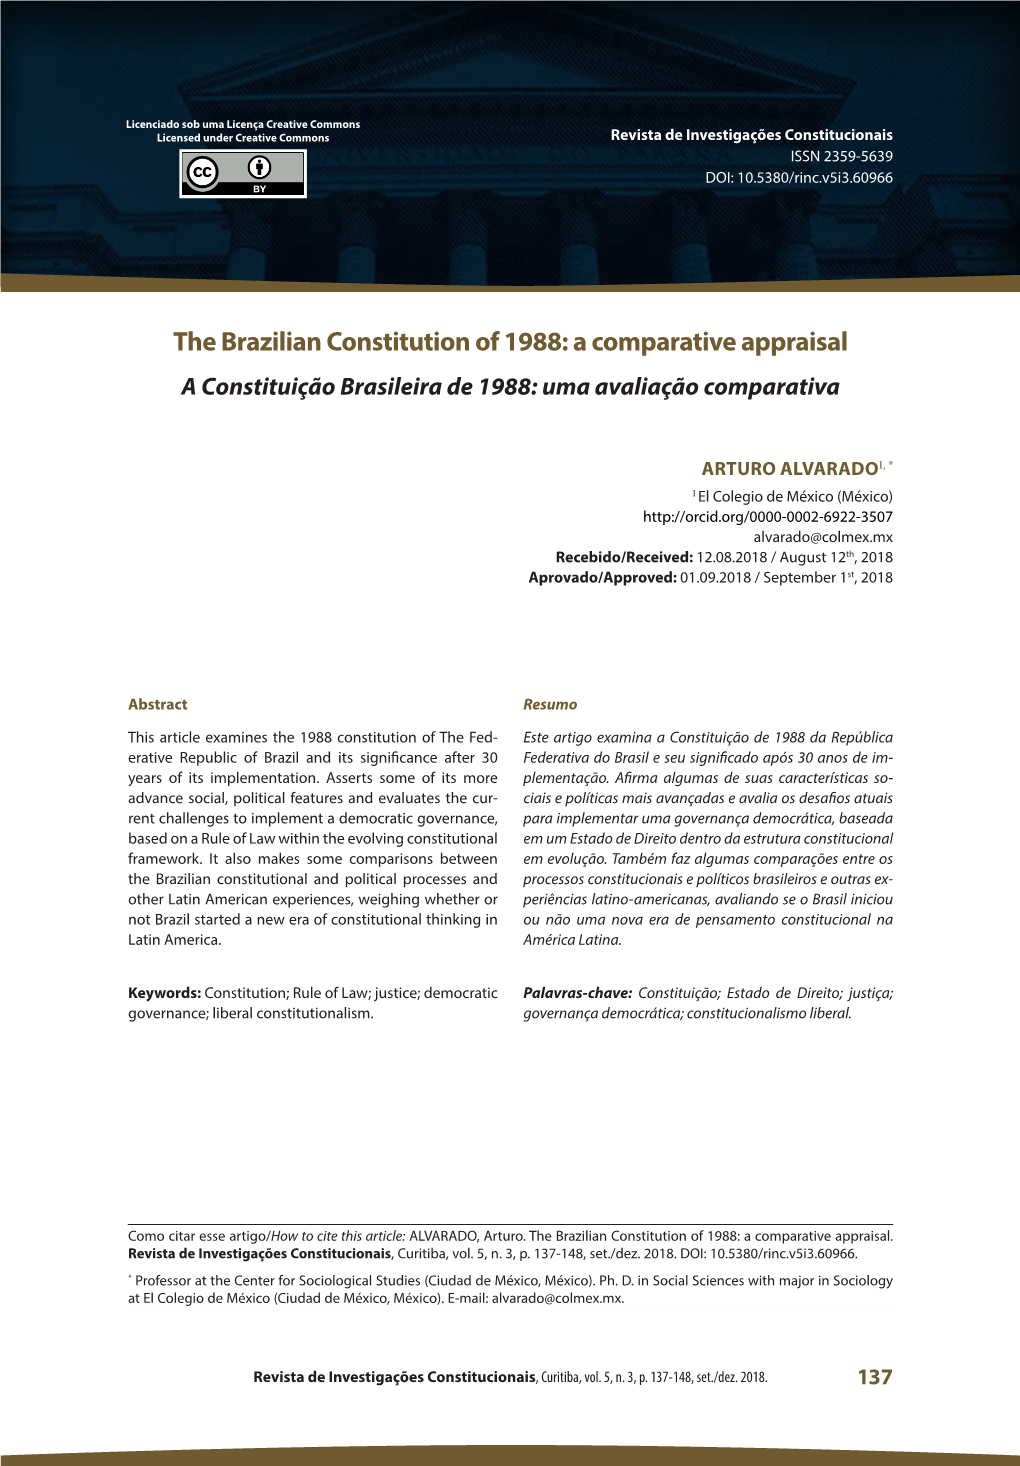 The Brazilian Constitution of 1988: a Comparative Appraisal a Constituição Brasileira De 1988: Uma Avaliação Comparativa